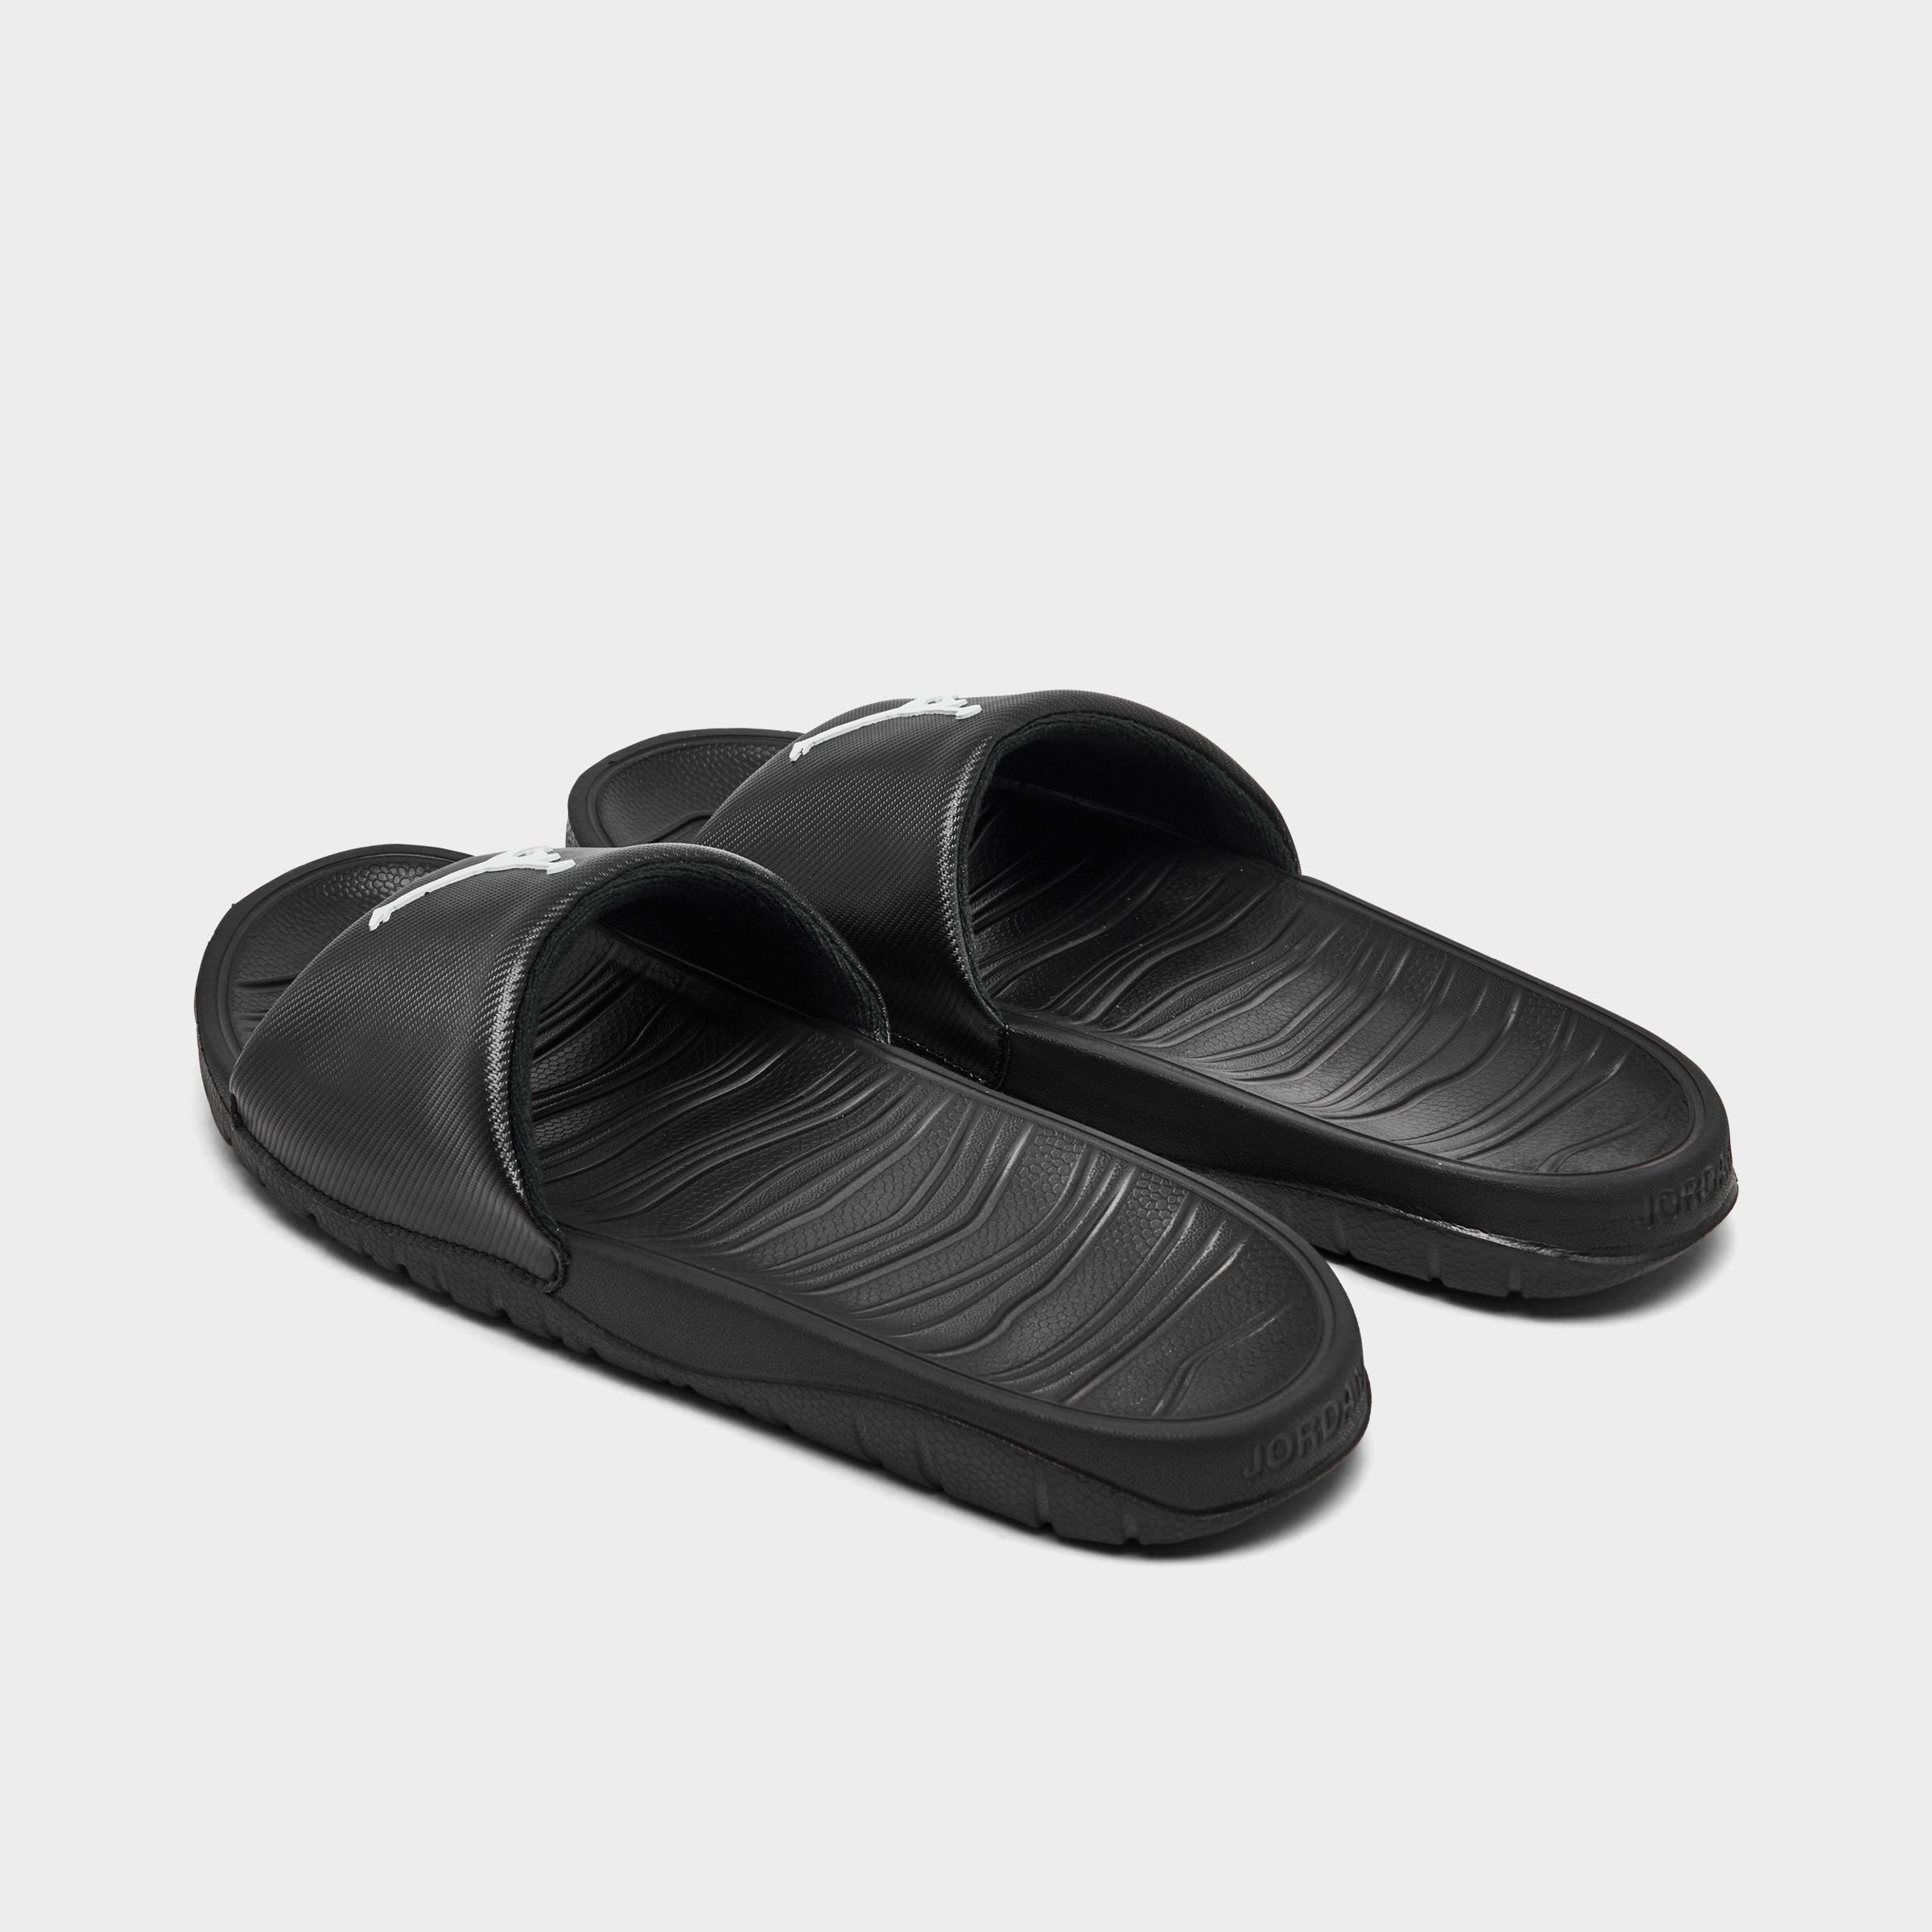 men's jordan break slide sandals